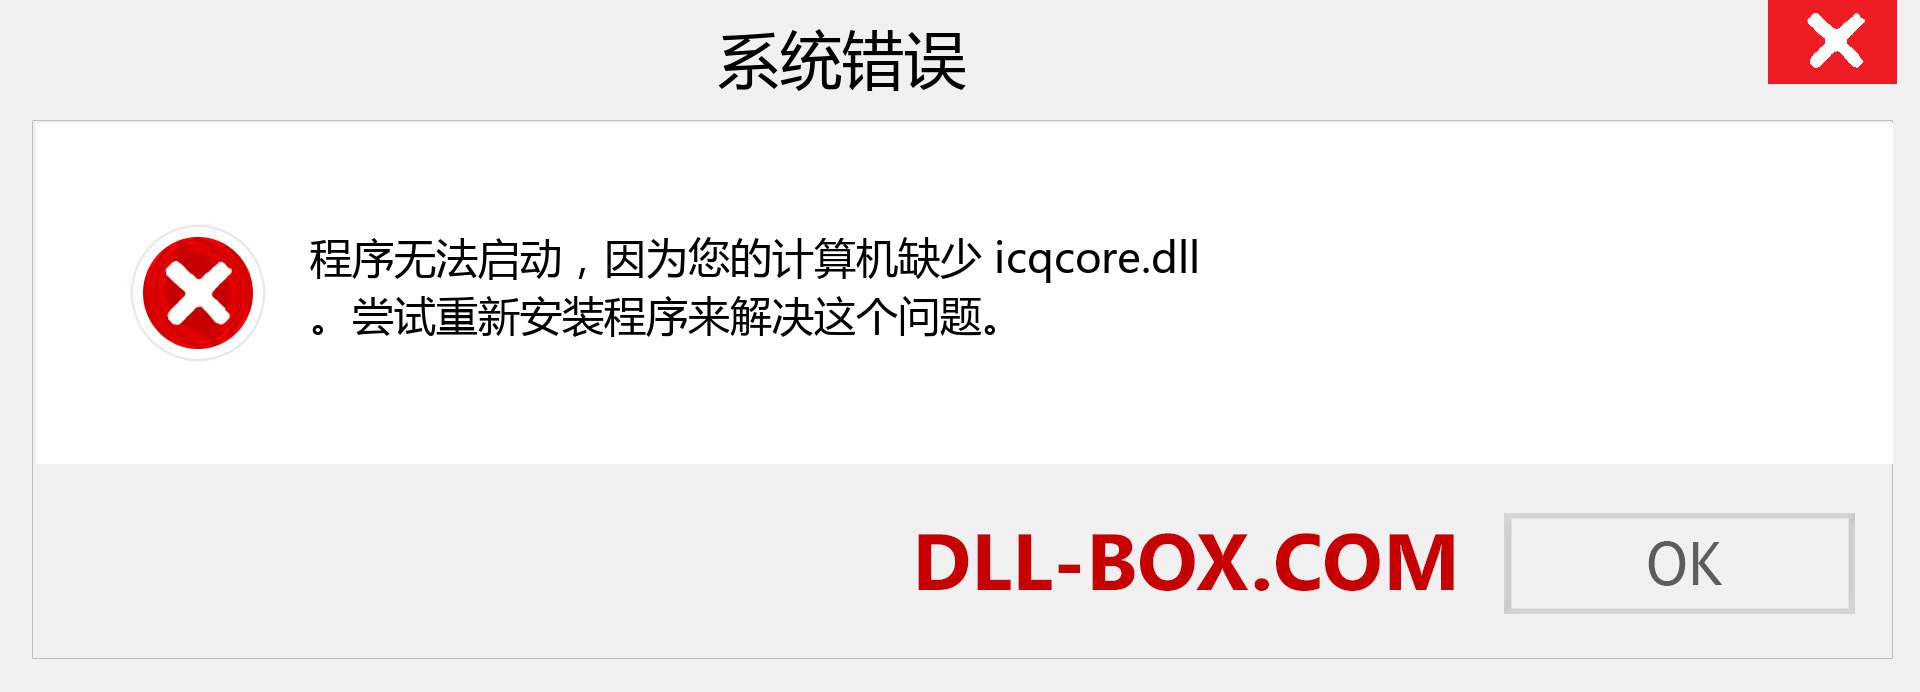 icqcore.dll 文件丢失？。 适用于 Windows 7、8、10 的下载 - 修复 Windows、照片、图像上的 icqcore dll 丢失错误